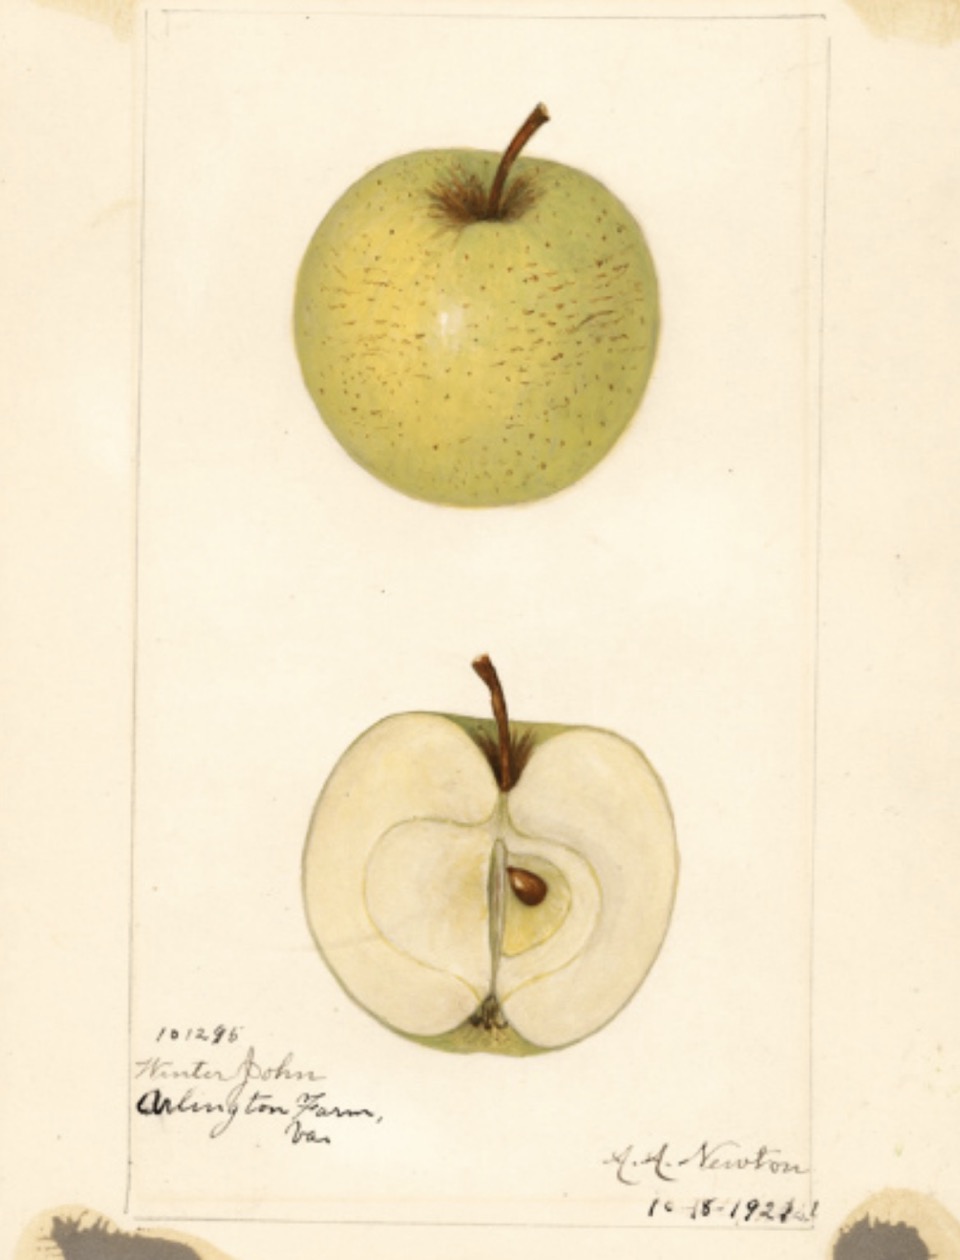 Historische Abbildung eines grün-gelblichen und eines aufgeschnittenen Apfels; USDA